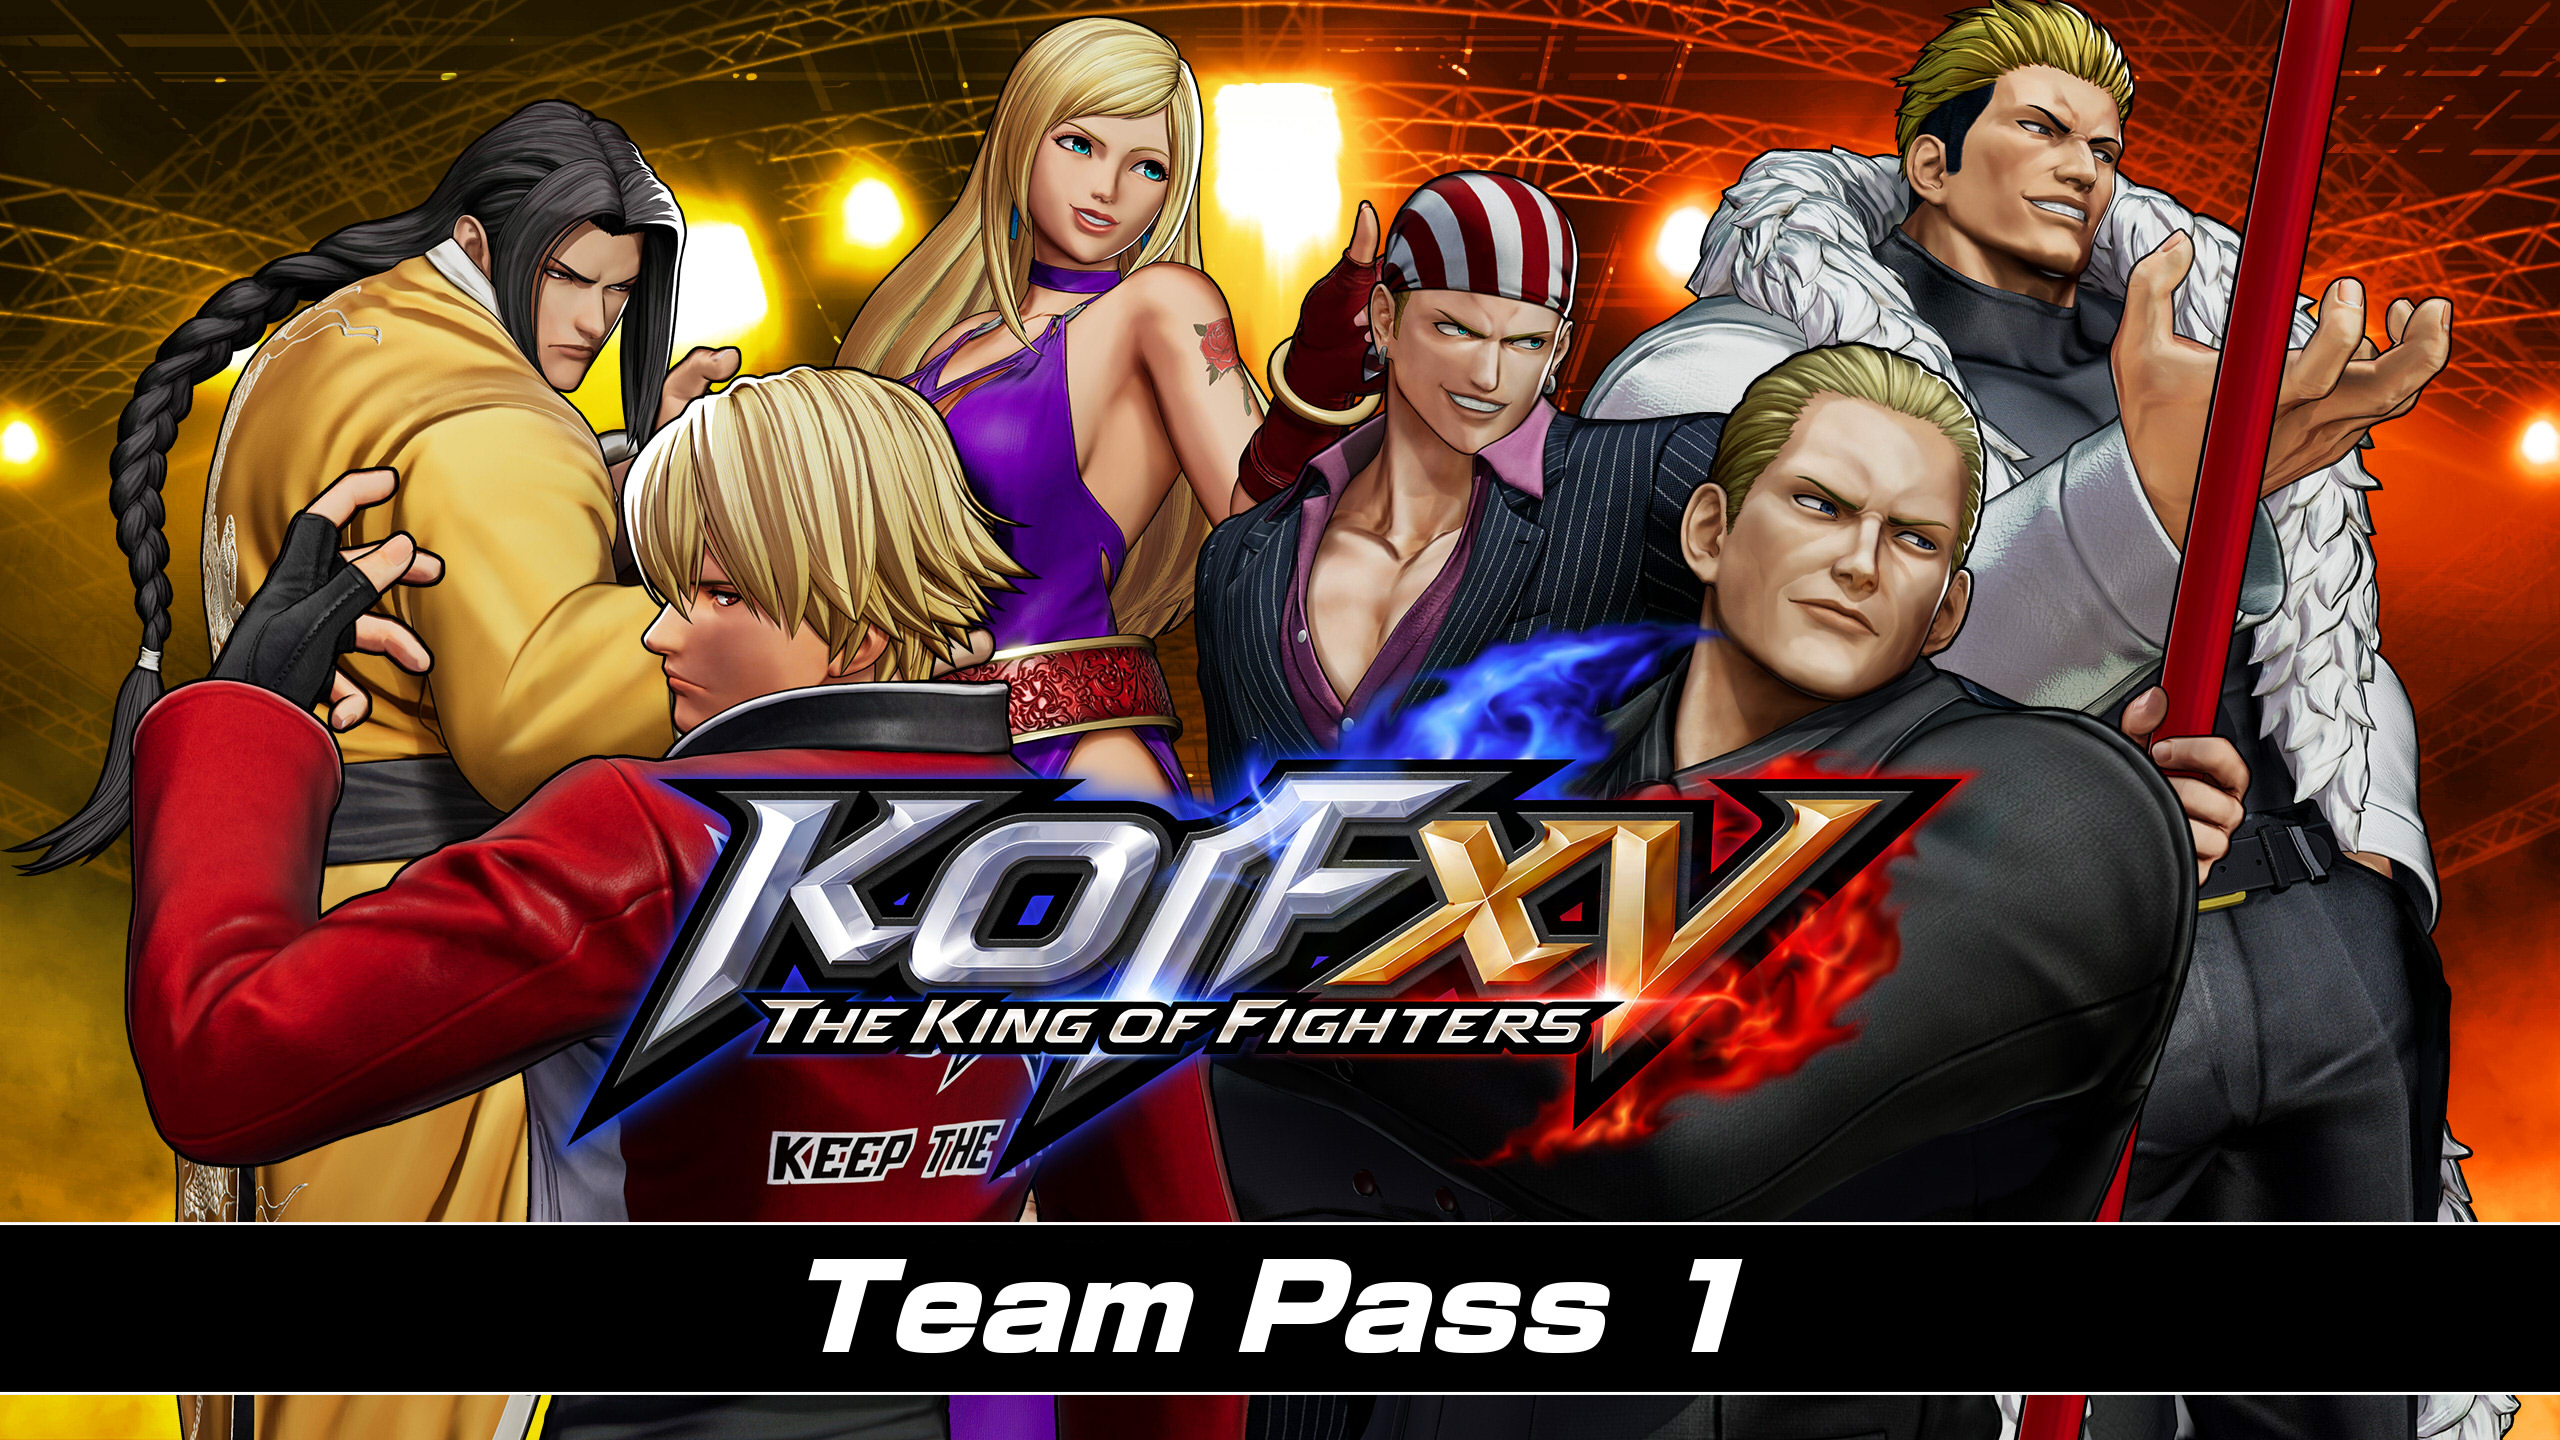 [$ 25.98] THE KING OF FIGHTERS XV - Team Pass 1 DLC EU PS4 CD Key